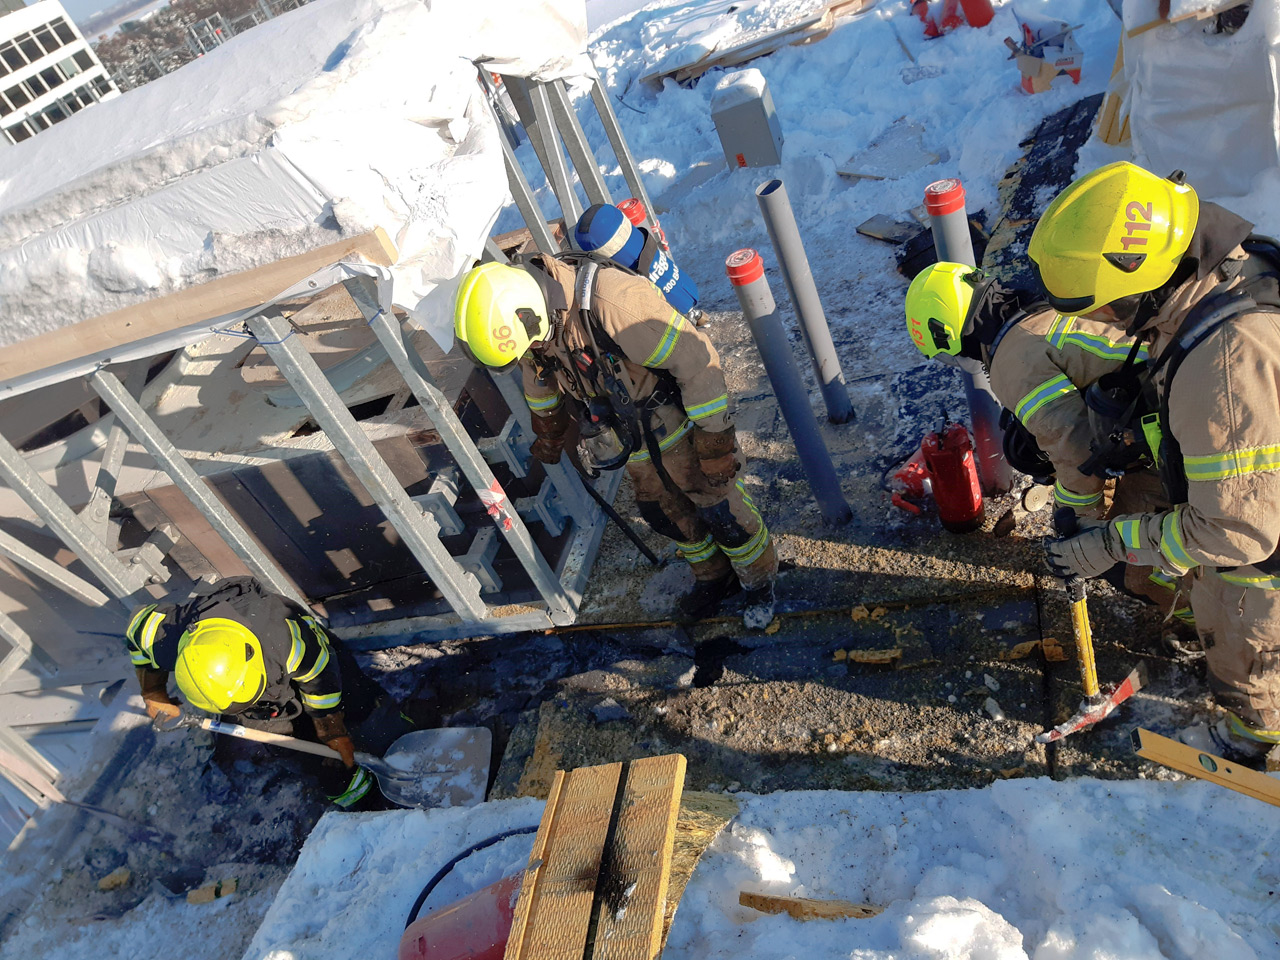 Länsi-Uudenmaan ja Helsingin pelastuslaitosten yksiköitä hälytettiin Espoon Tapiolassa syttyneen tulipalon sammutustöihin viime vuoden helmikuussa. Palo sai alkunsa katolla tehdyistä tulitöistä. Tapauksesta kerrottiin Pelastustiedon 2/2021 tulityösivuilla.